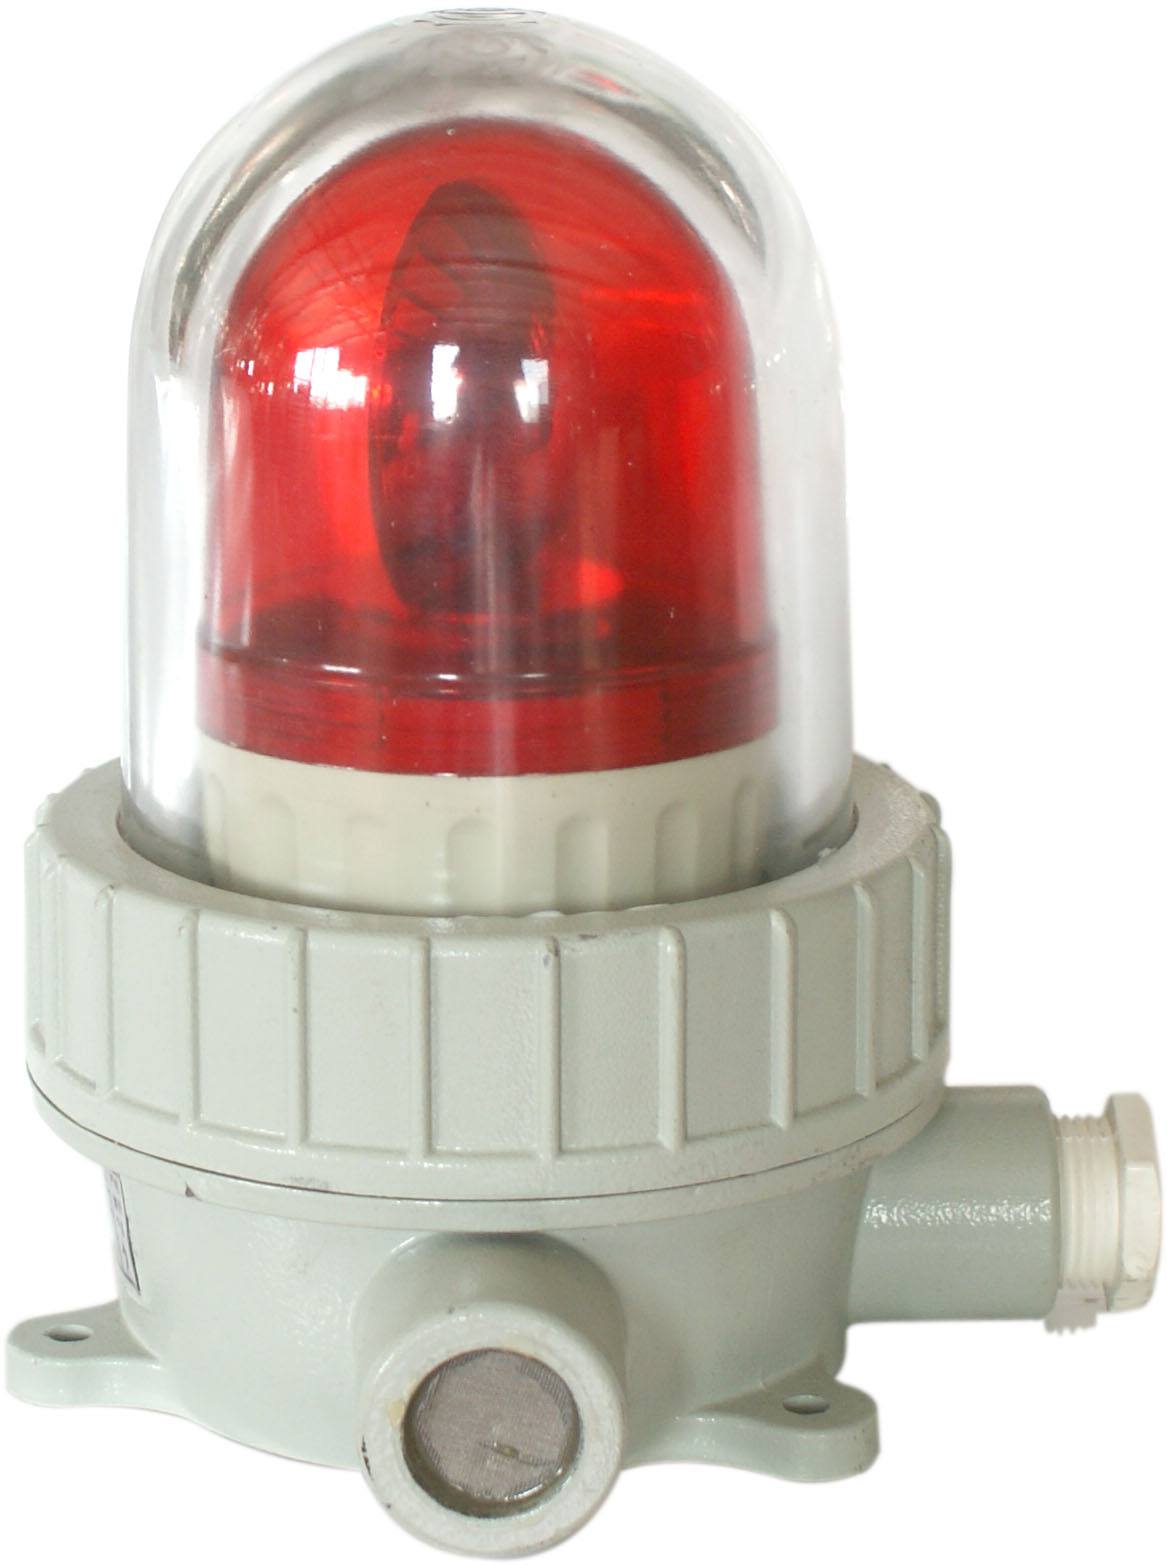 36V防爆声光器行业价格-东城防爆声光器型号